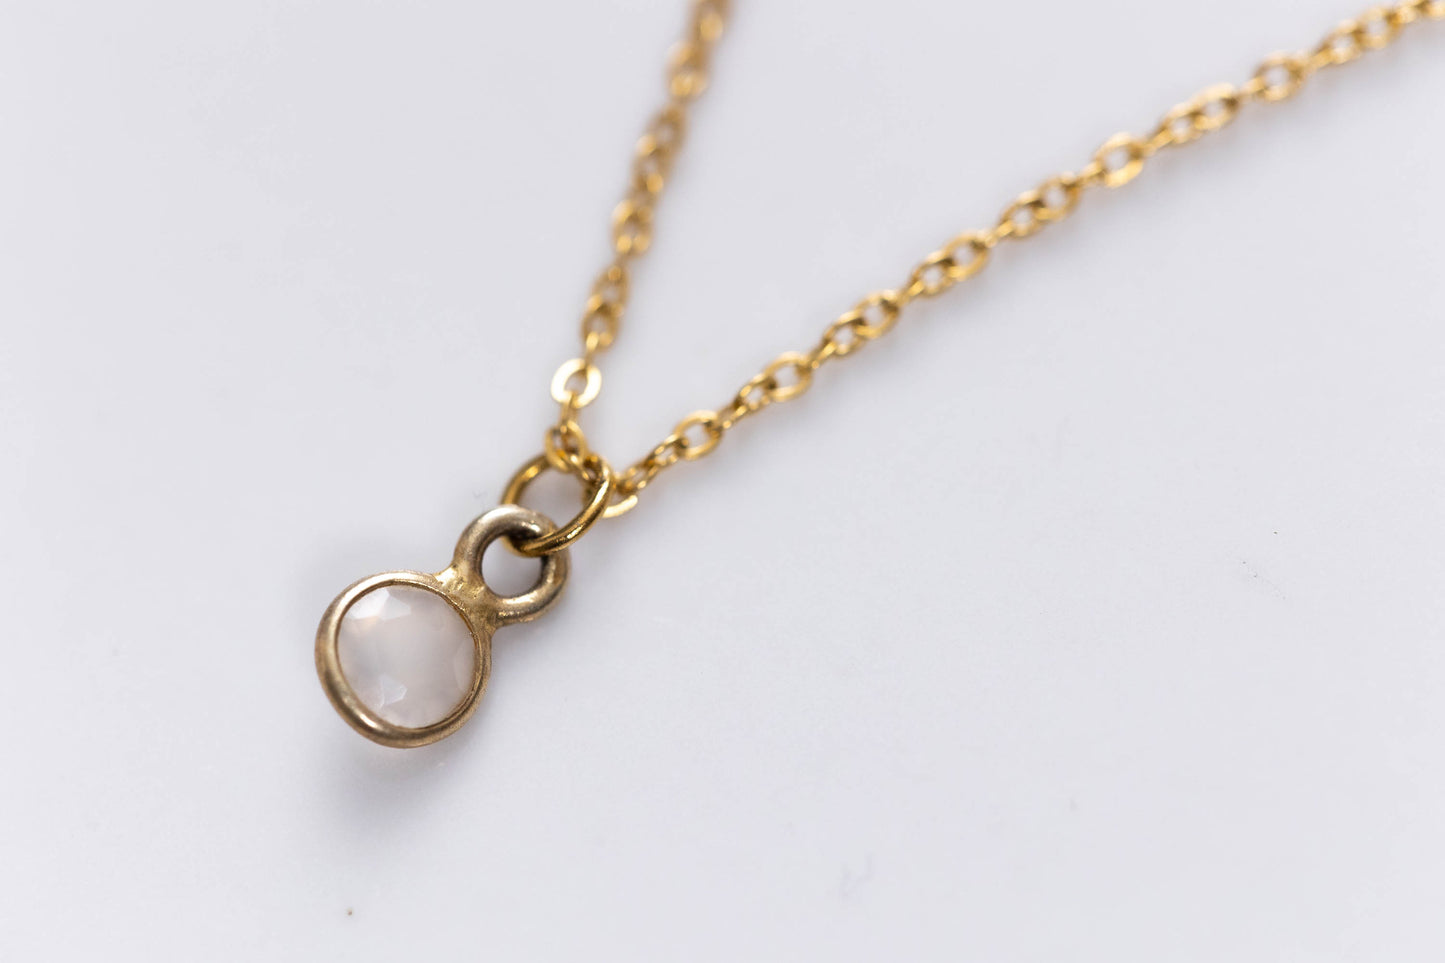 Small precious stones necklaces